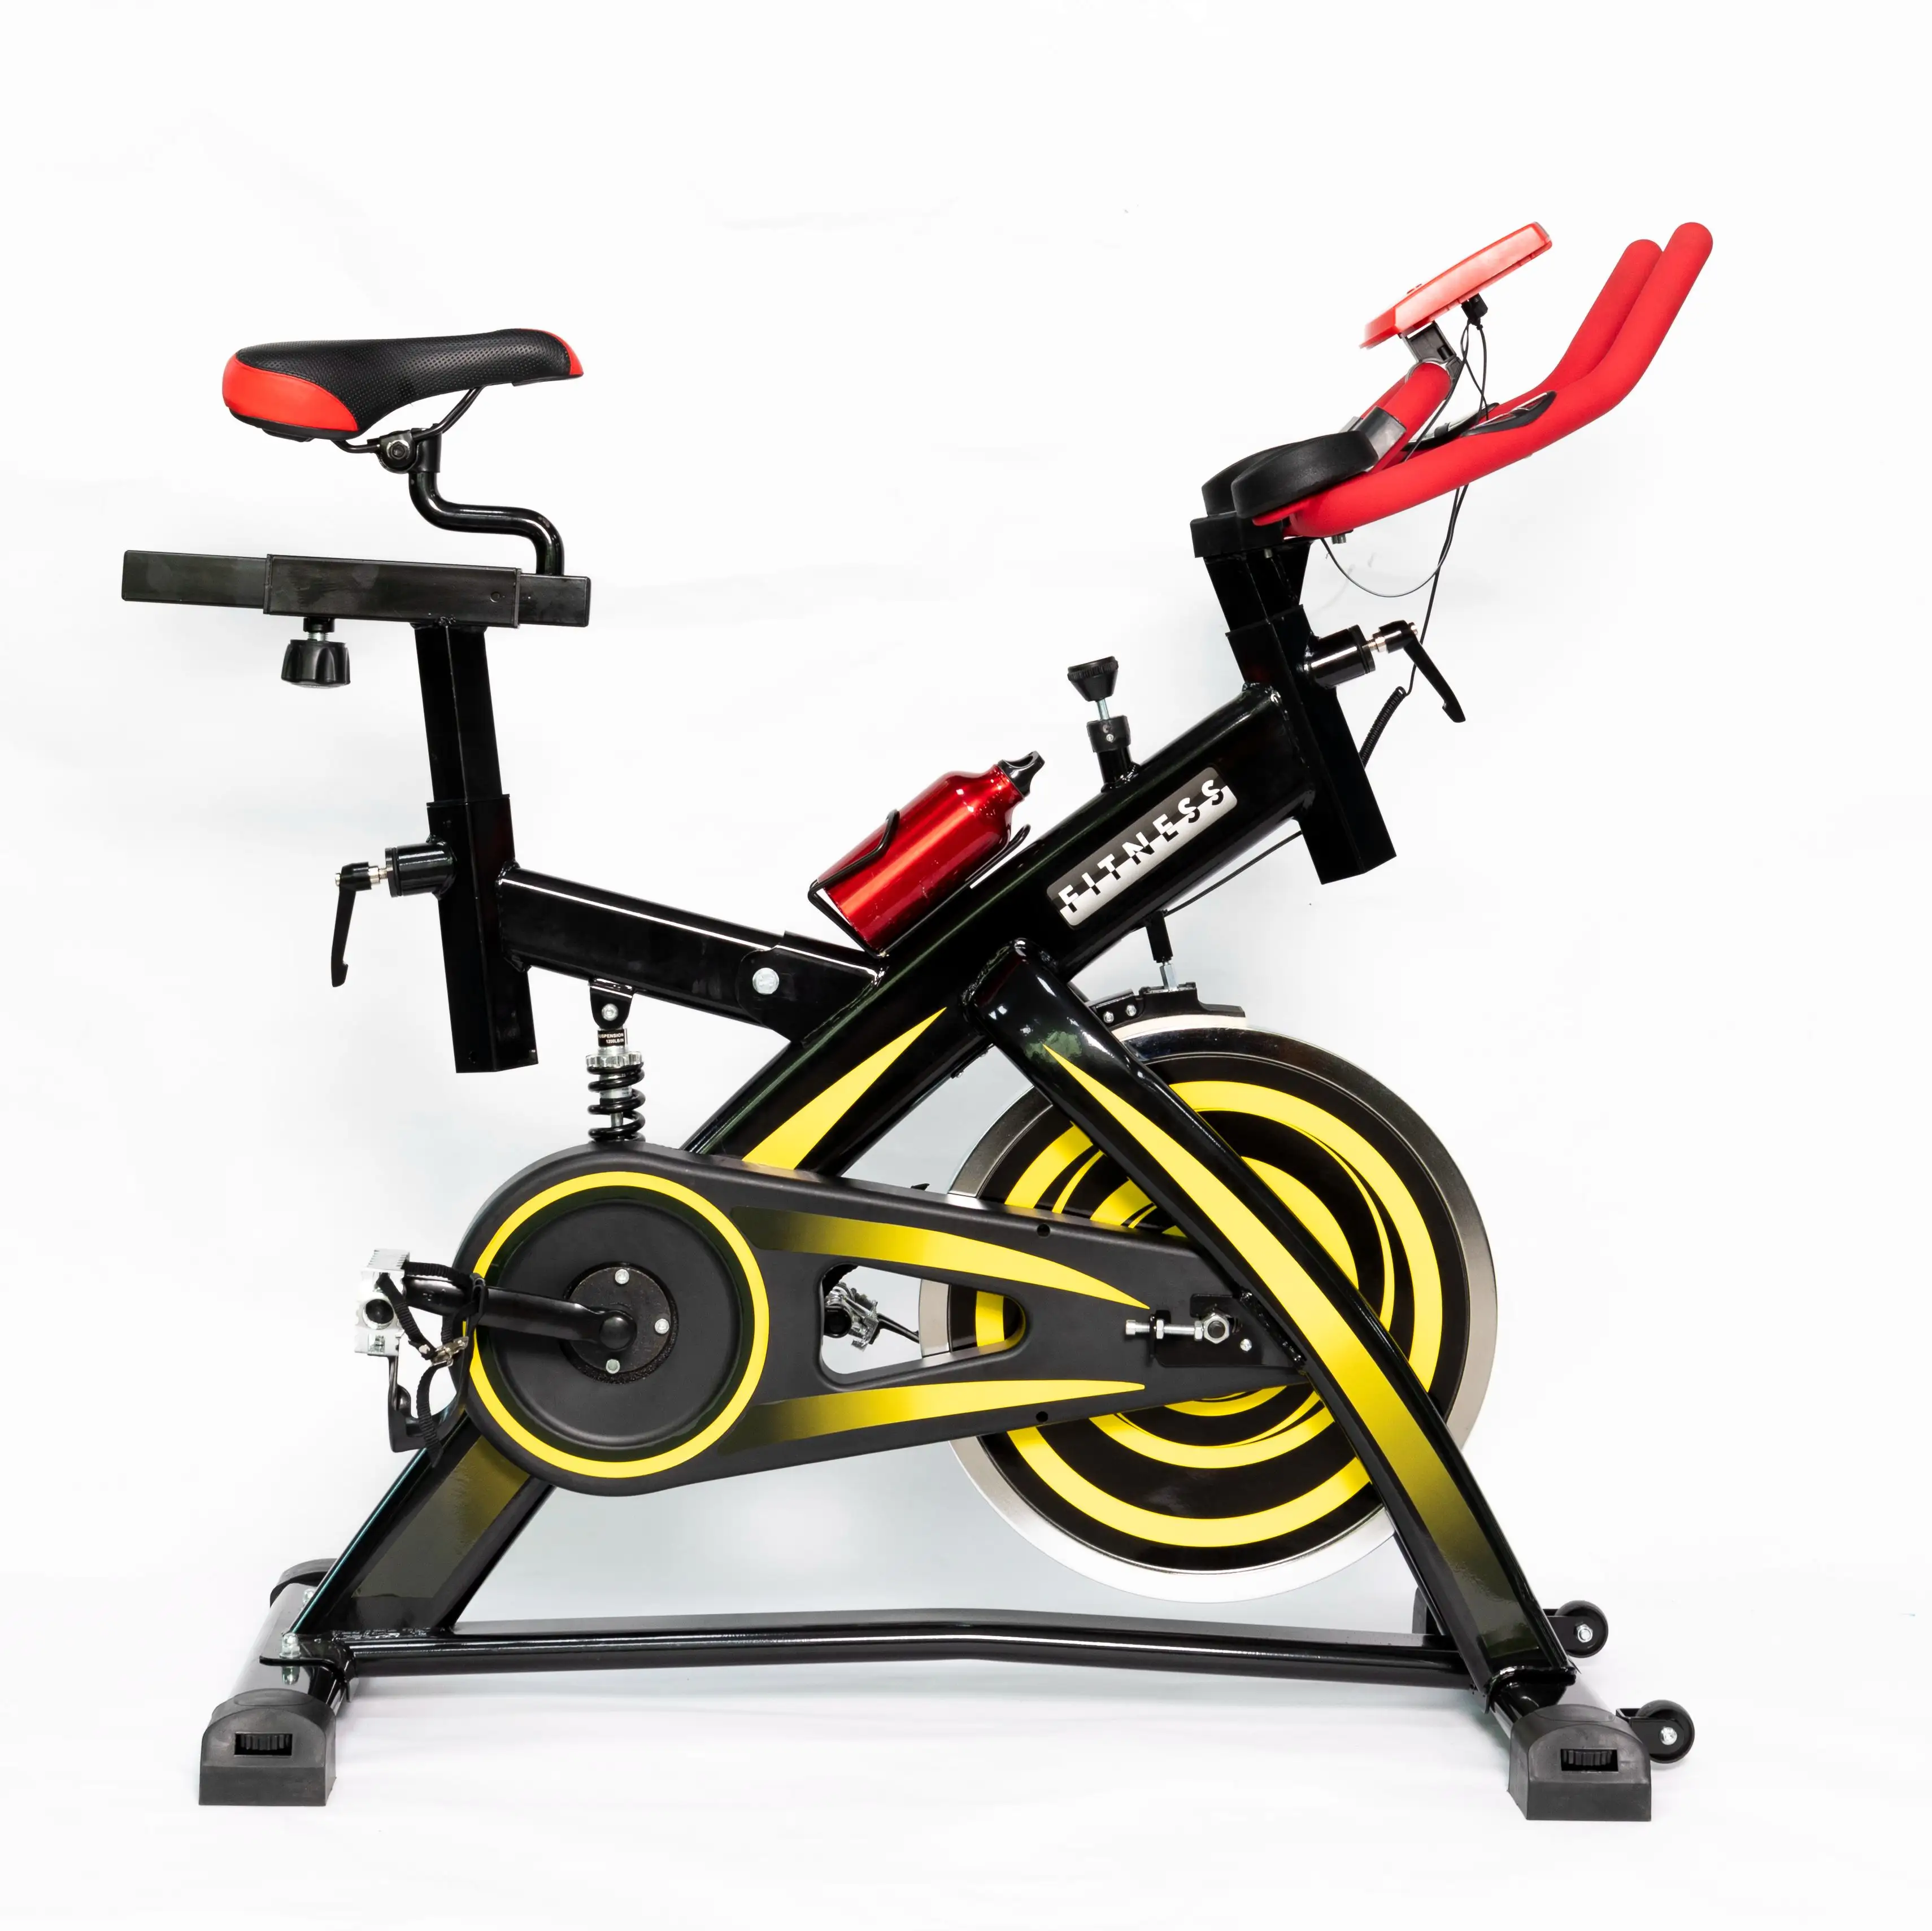 Galecon Precor 체육관 스크린 휴대용 피트니스 다리 운동 발 페달 연습기 사이클 운동 자전거